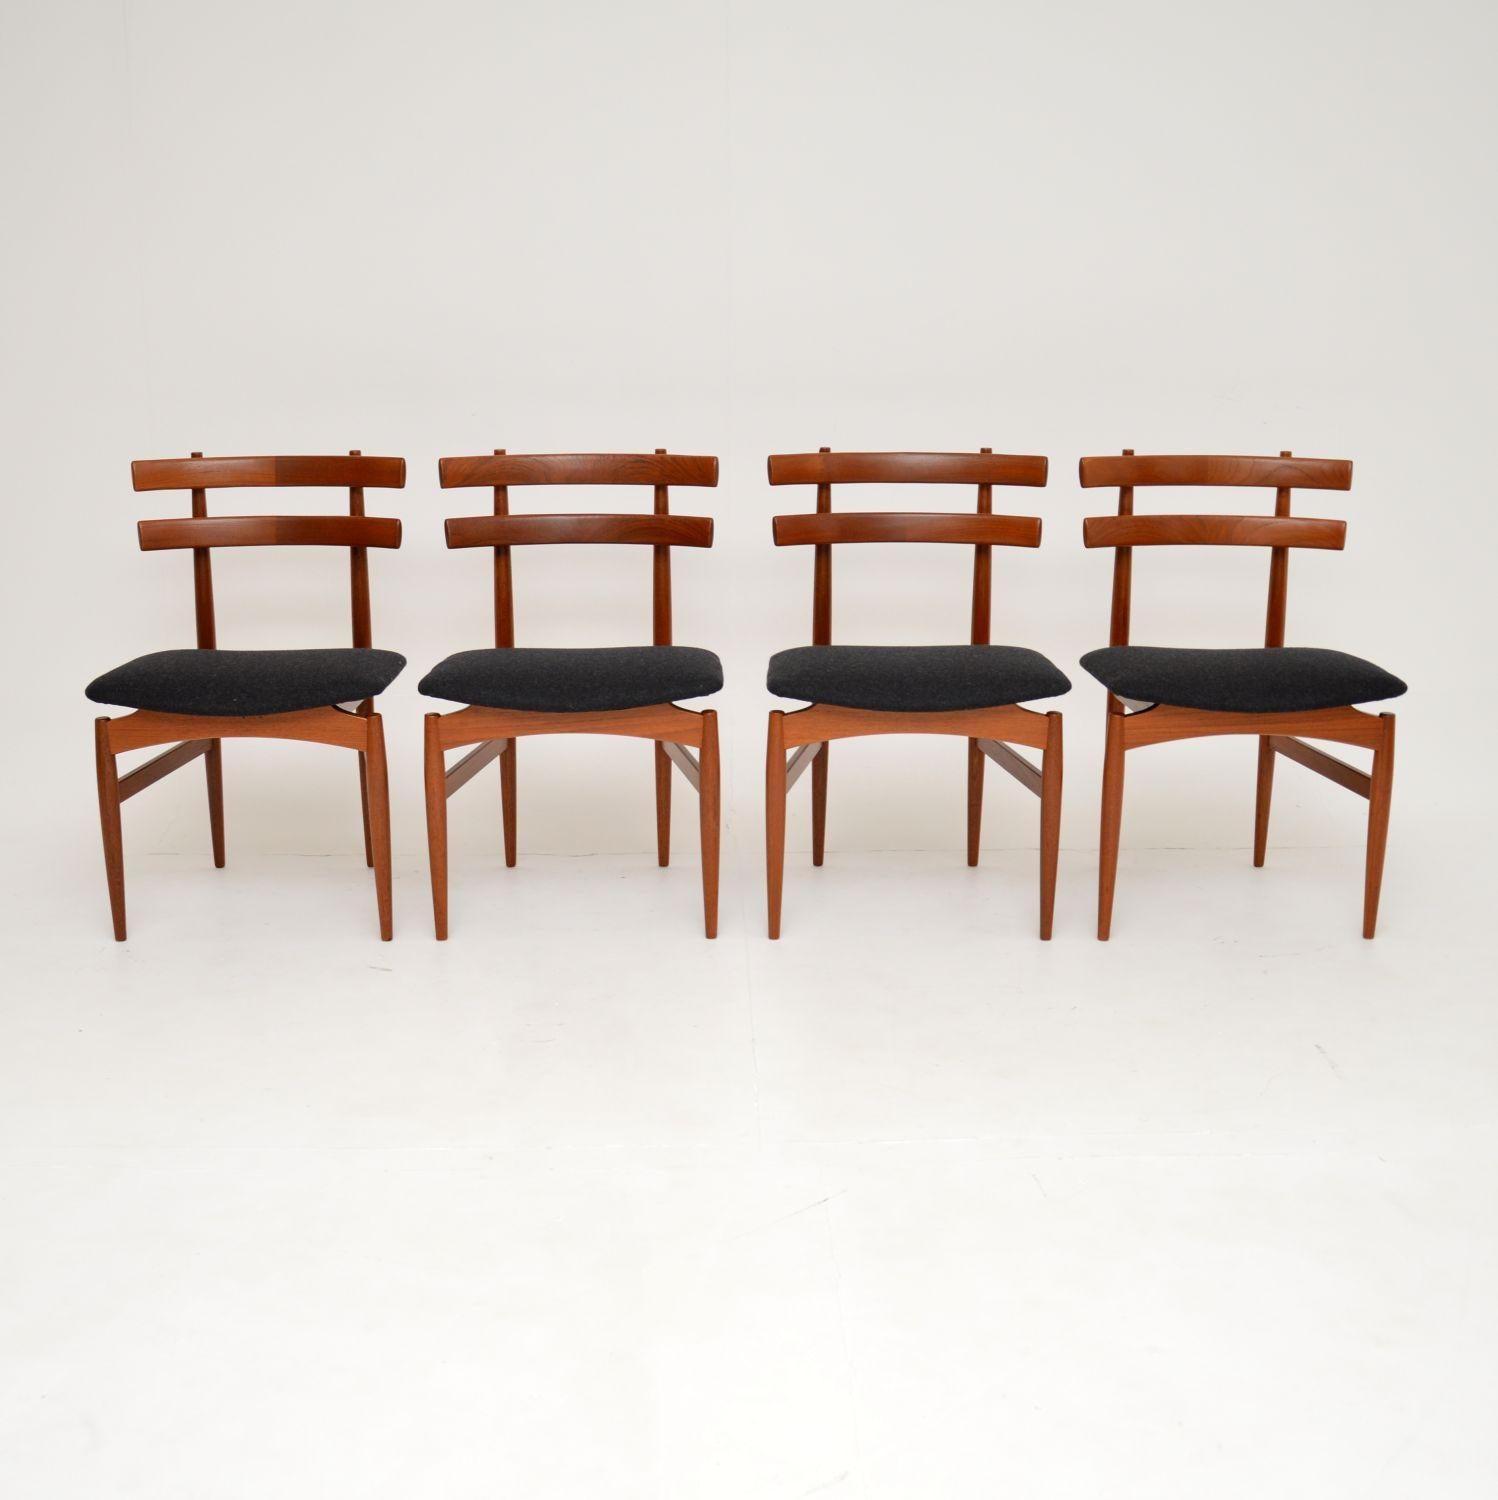 Un magnifique et sculptural ensemble de quatre chaises de salle à manger danoises en teck vintage, conçu par Poul Hundevad pour Vamdrup. Ils ont été fabriqués au Danemark et datent des années 1960.

La qualité est étonnante, avec un design